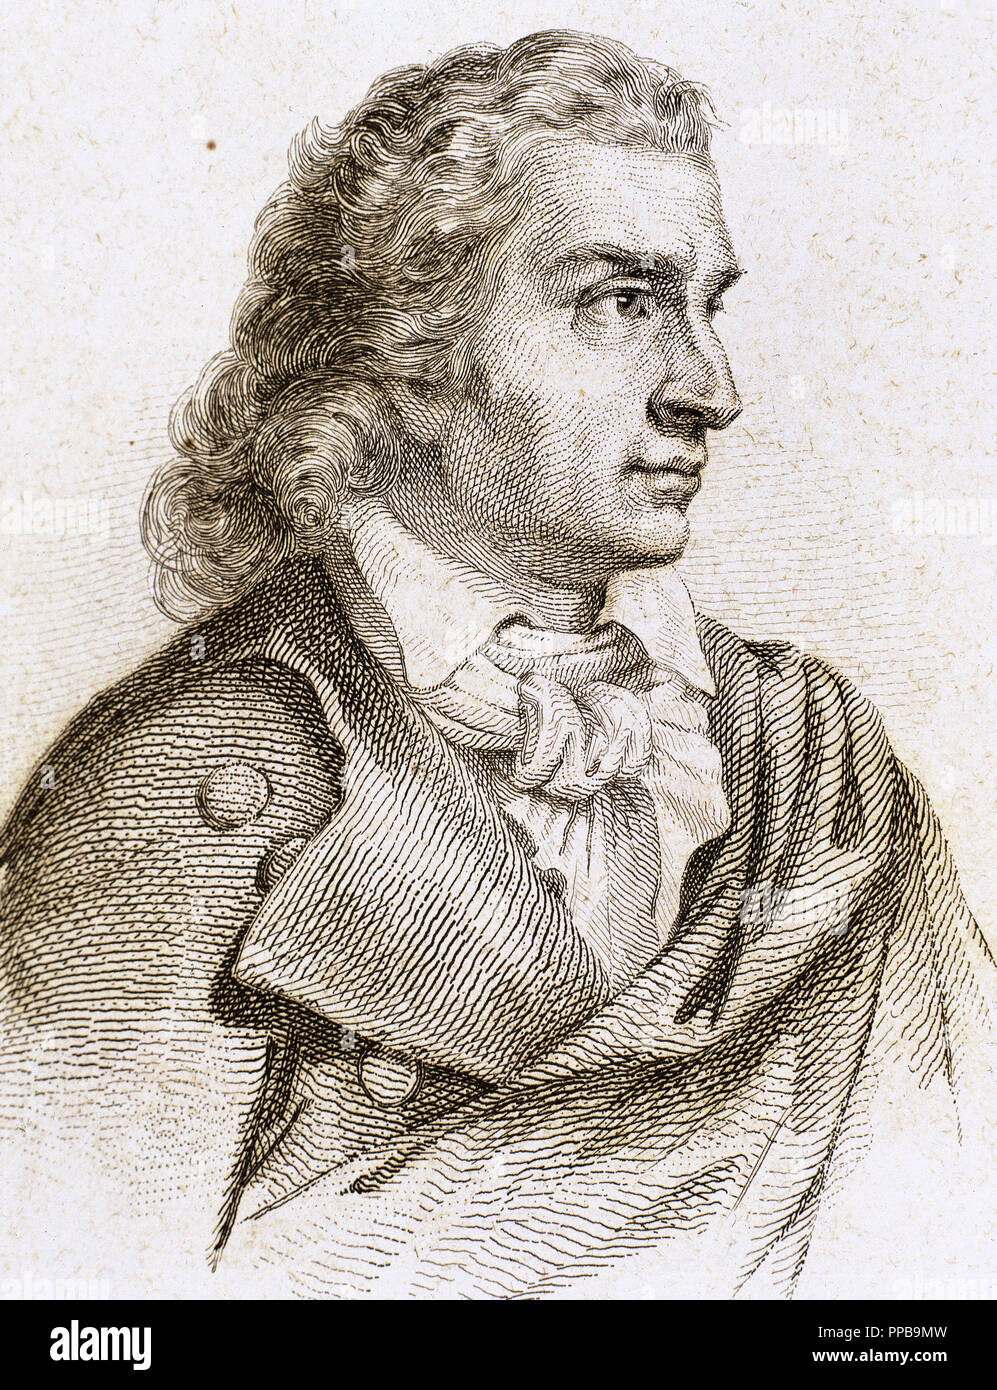 Friedrich Schiller (1759-1805). Deutsche Dichter, Philosoph, Historiker und Dramatiker. Gravur. Stockfoto